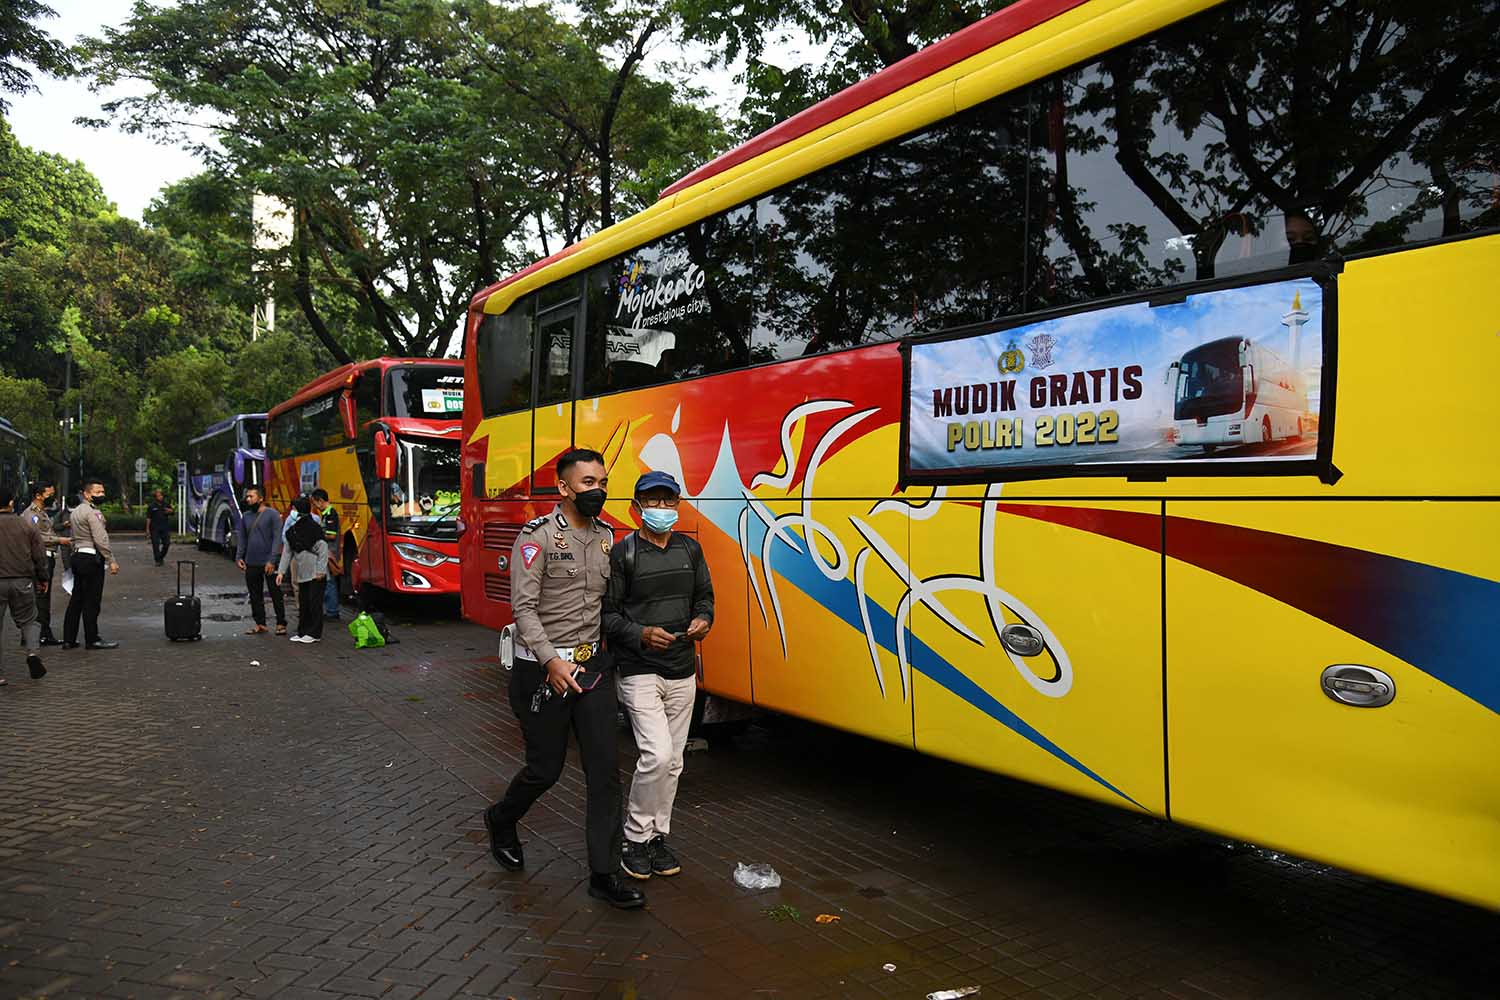 Pendaftaran Tiket Bus Mudik Gratis Polri Telah Dibuka, Buruan Jangan Sampai Kehabisan